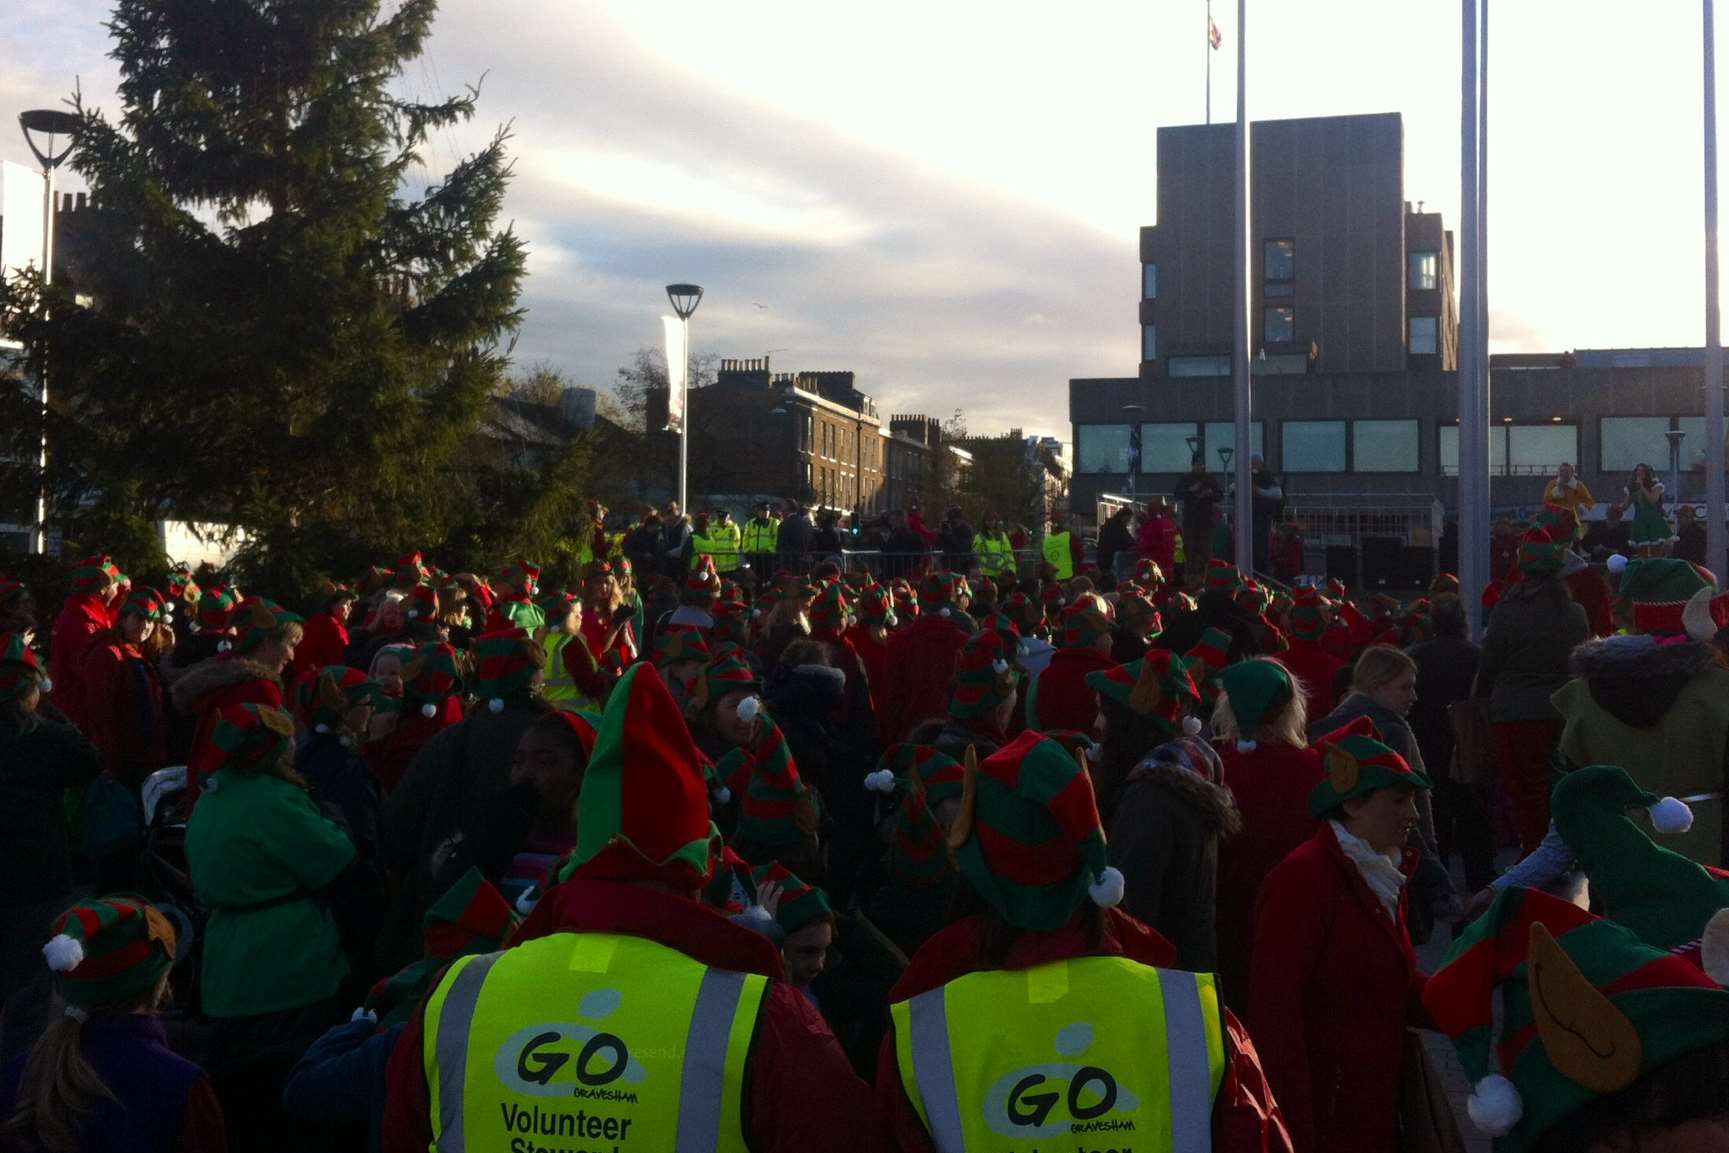 Hundreds of elves descended on Gravesend town centre